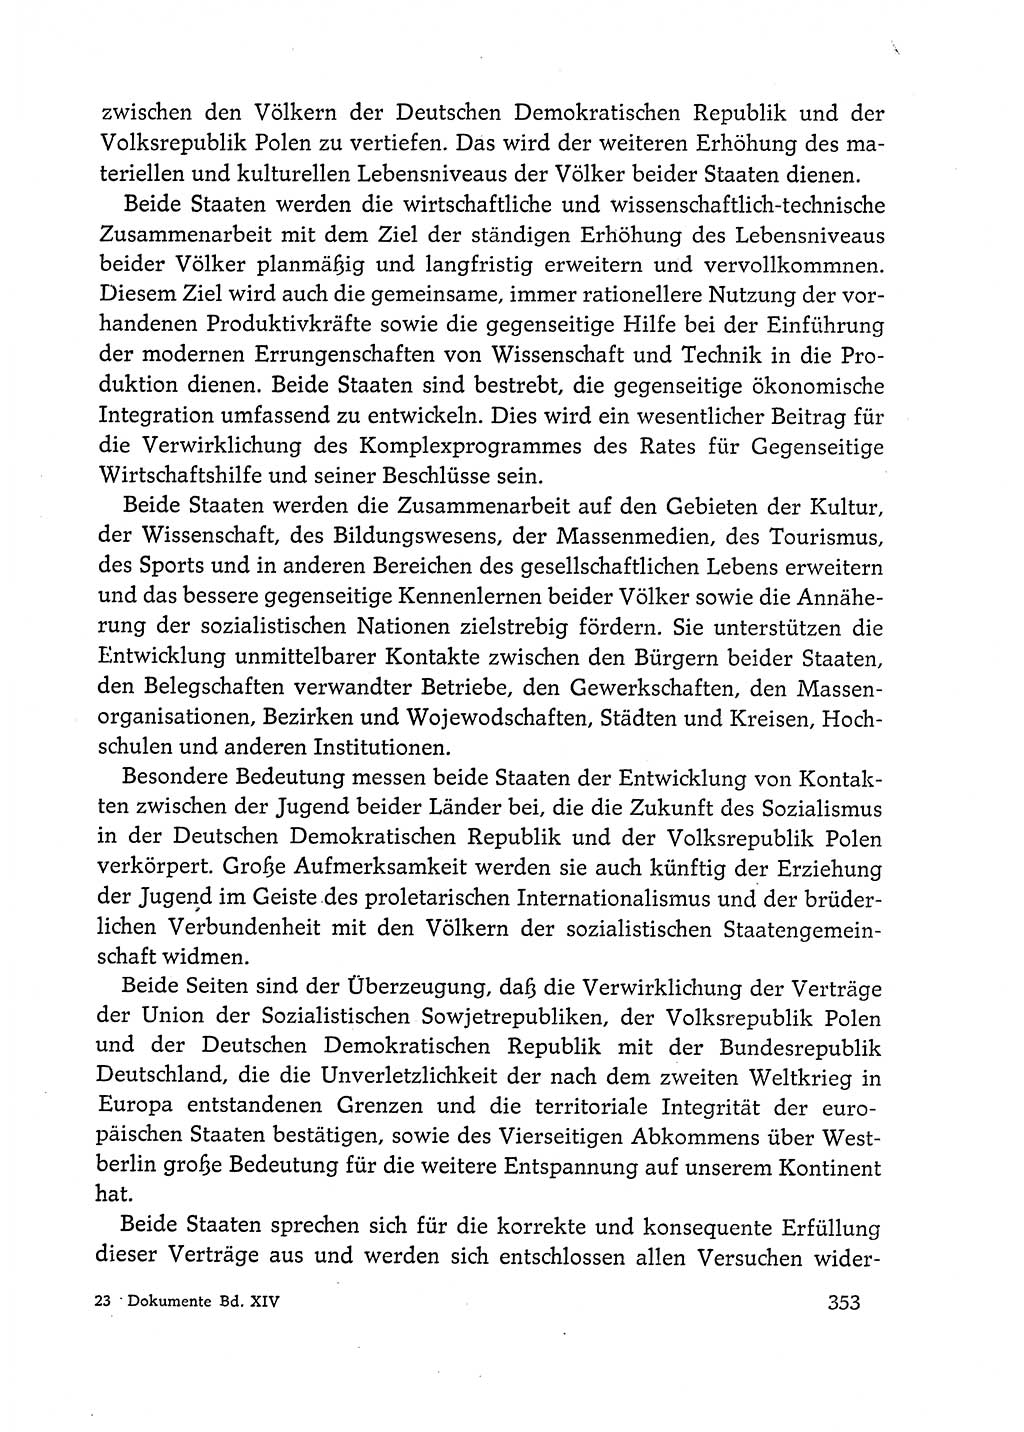 Dokumente der Sozialistischen Einheitspartei Deutschlands (SED) [Deutsche Demokratische Republik (DDR)] 1972-1973, Seite 353 (Dok. SED DDR 1972-1973, S. 353)